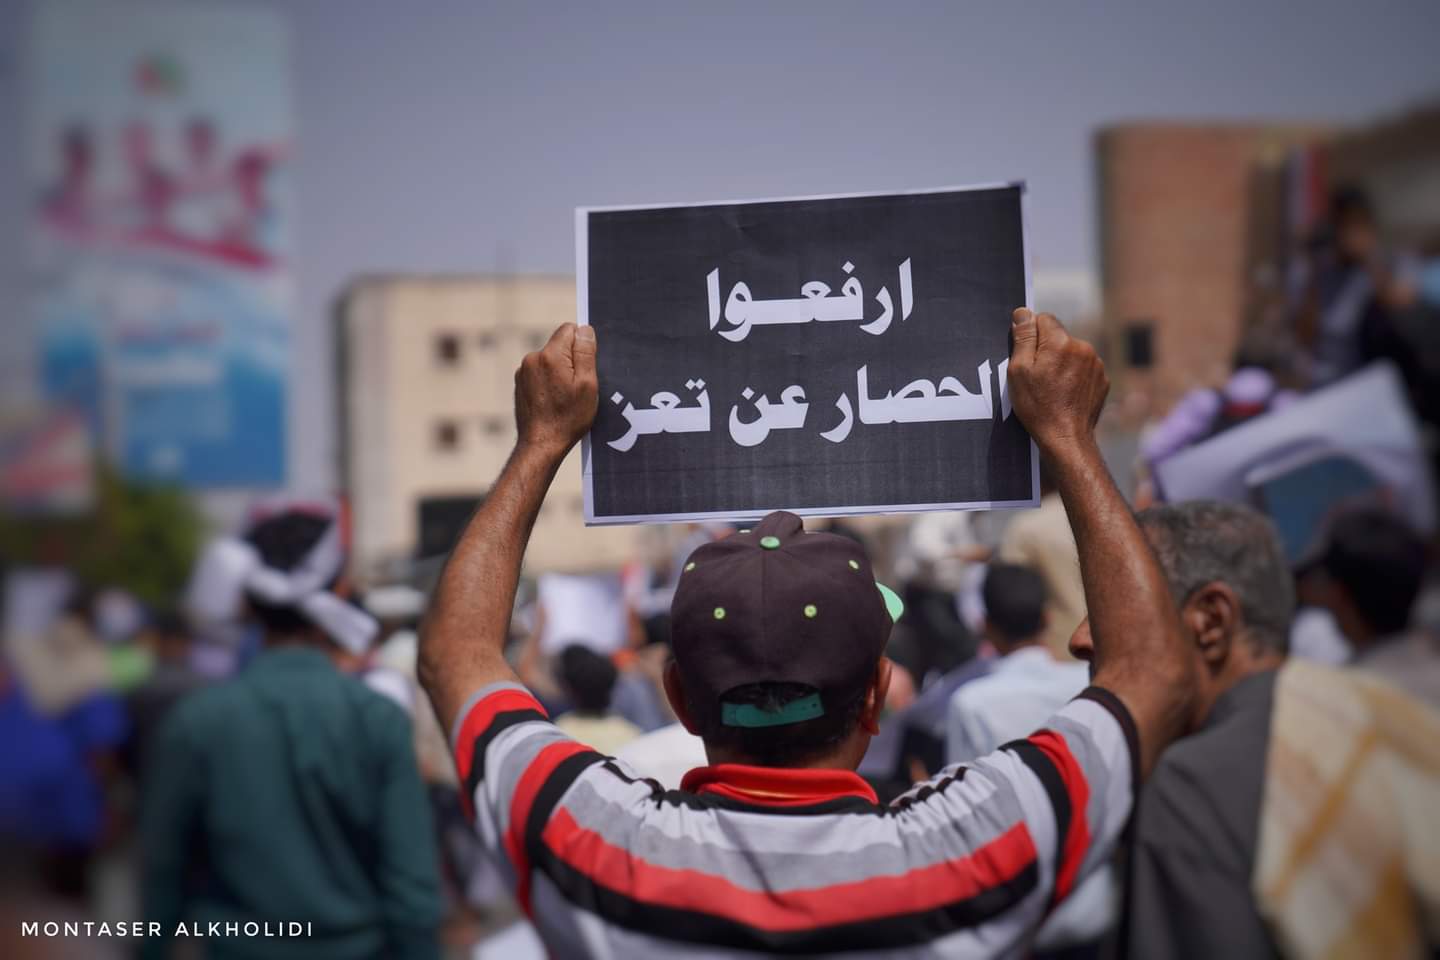 مظاهرة جماهيرية واسعة في تعز تطالب بإنهاء الحصار عن المدينة